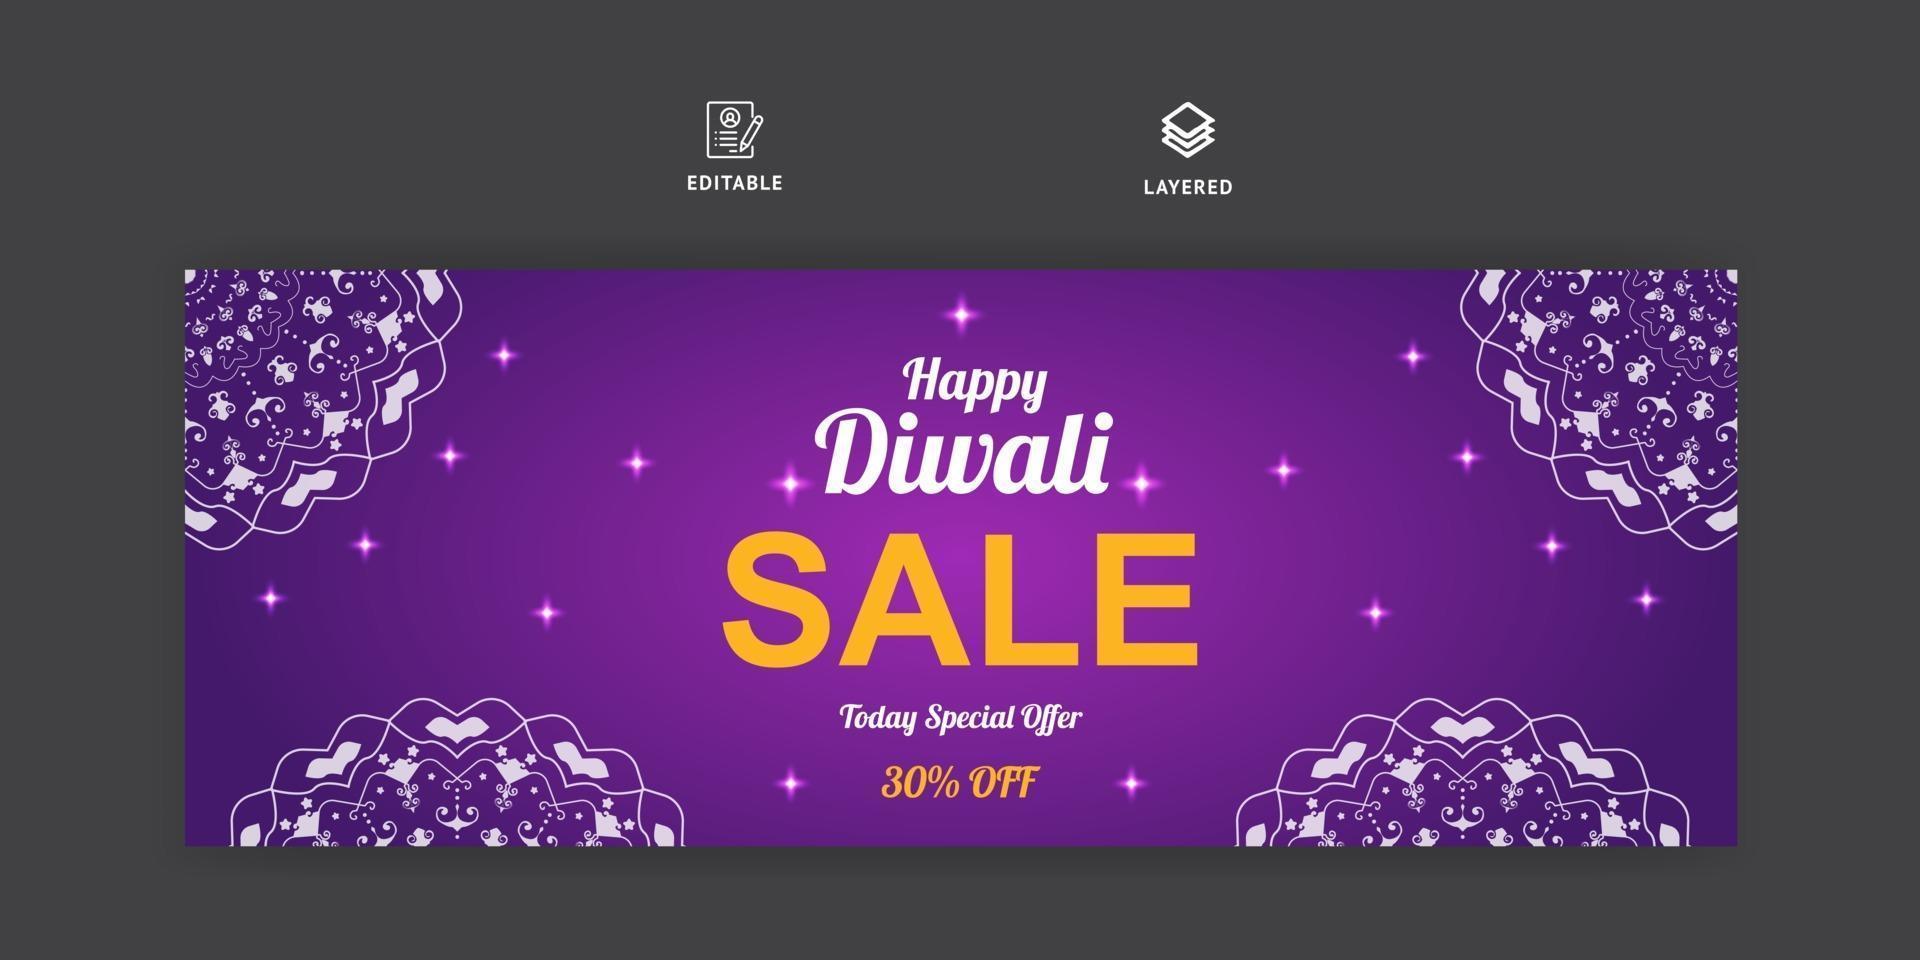 banner de mídia social de venda de diwali e modelo de capa do Facebook vetor